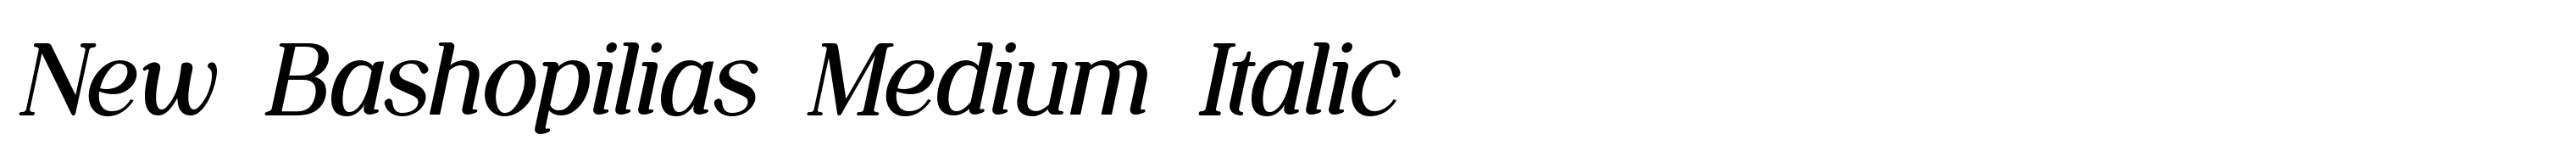 New Bashopilias Medium Italic